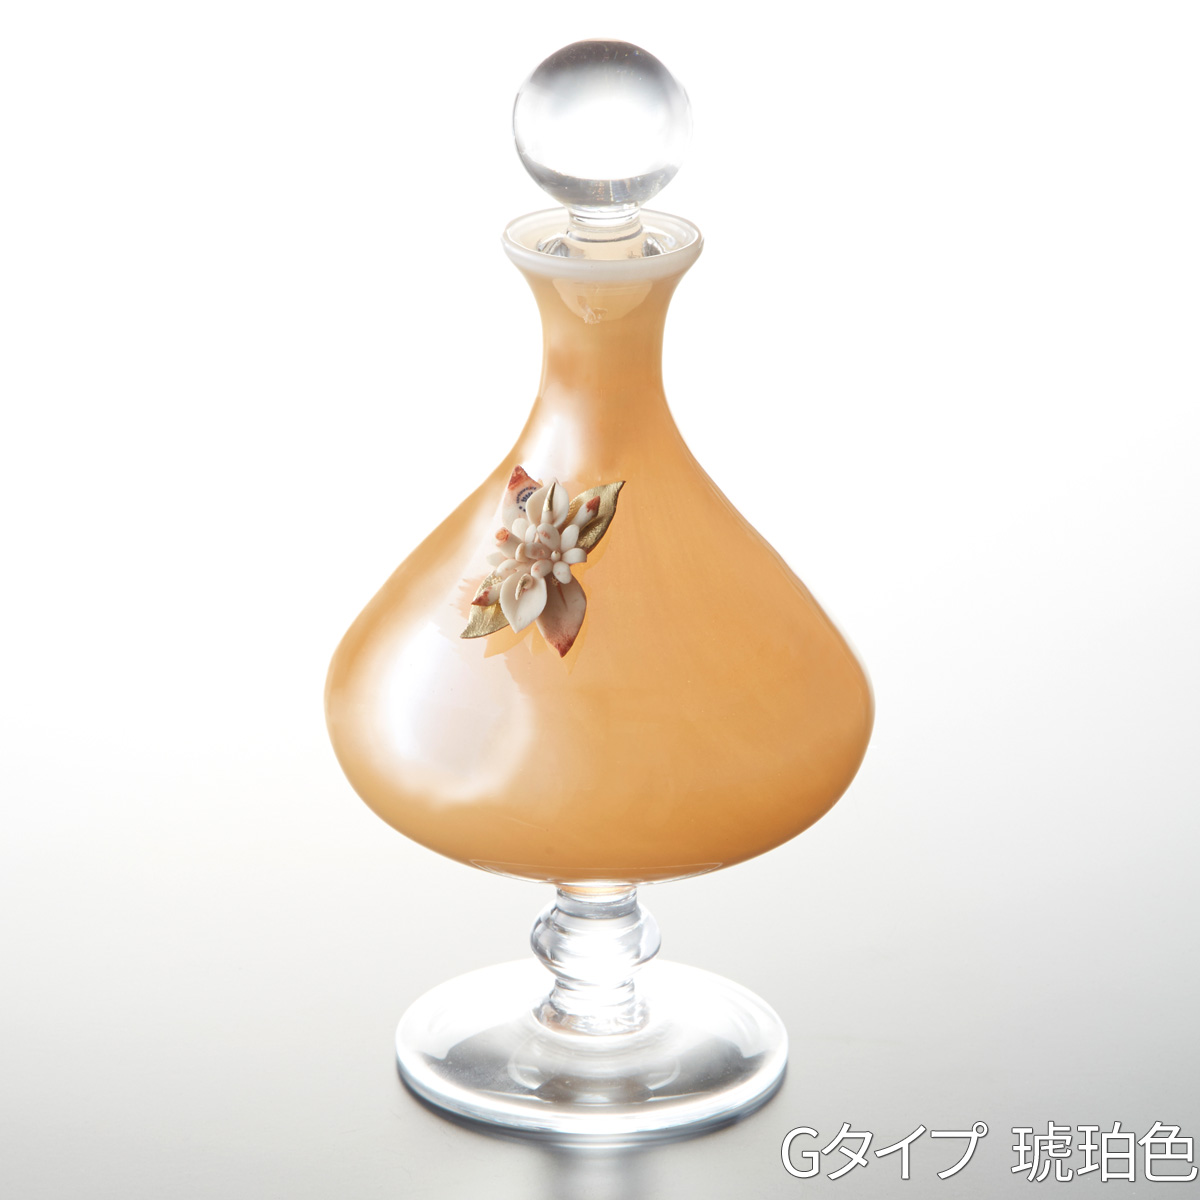 ムラーノガラス ヴェネツィアンガラス 香水瓶 一輪挿し ピンク ゴールド - blog.knak.jp